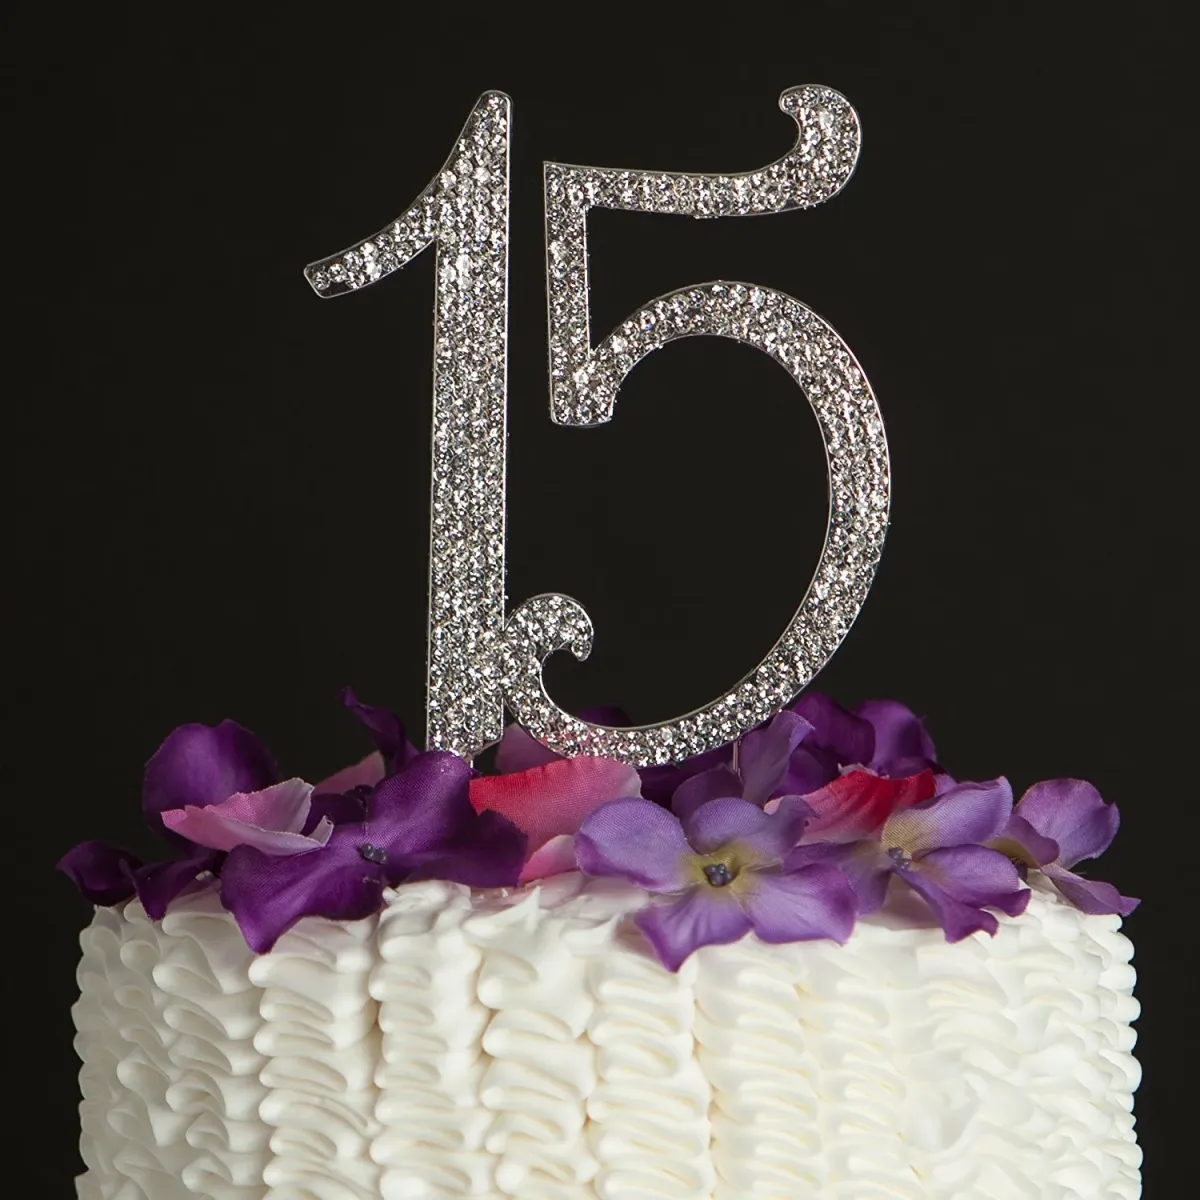 С 15 летием девочке в прозе. Торт на день рождения 15 лет. Тортик цифры 15. С днём рождения 15 лет девушке. Торт для девочки 15 лет на день рождения.